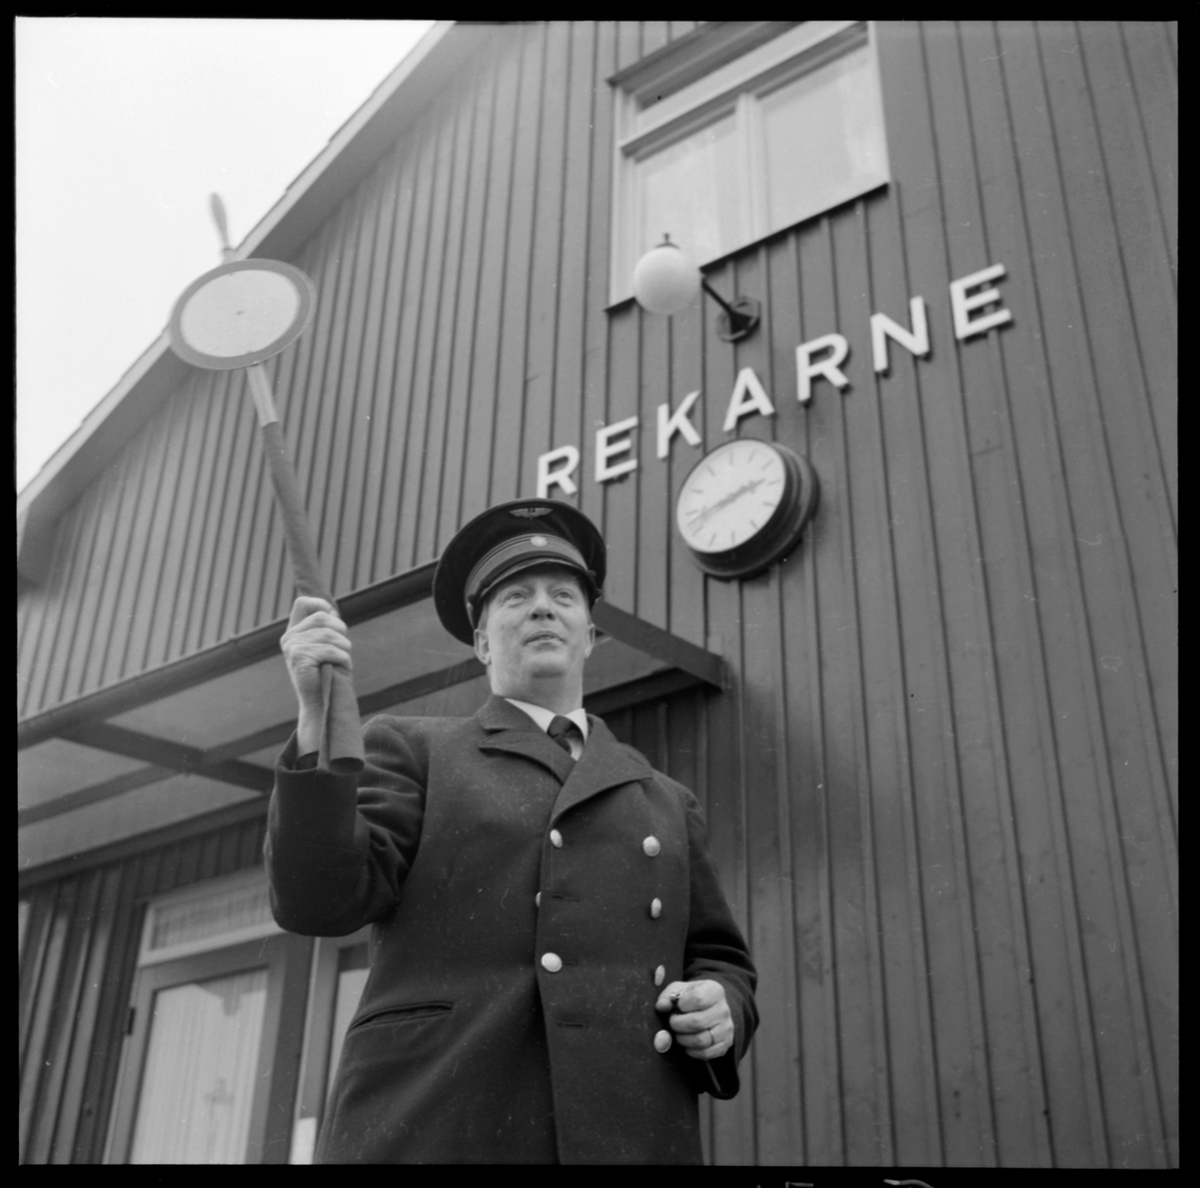 Stationsföreståndare Roos ger avgångsignal på Rekarne station.